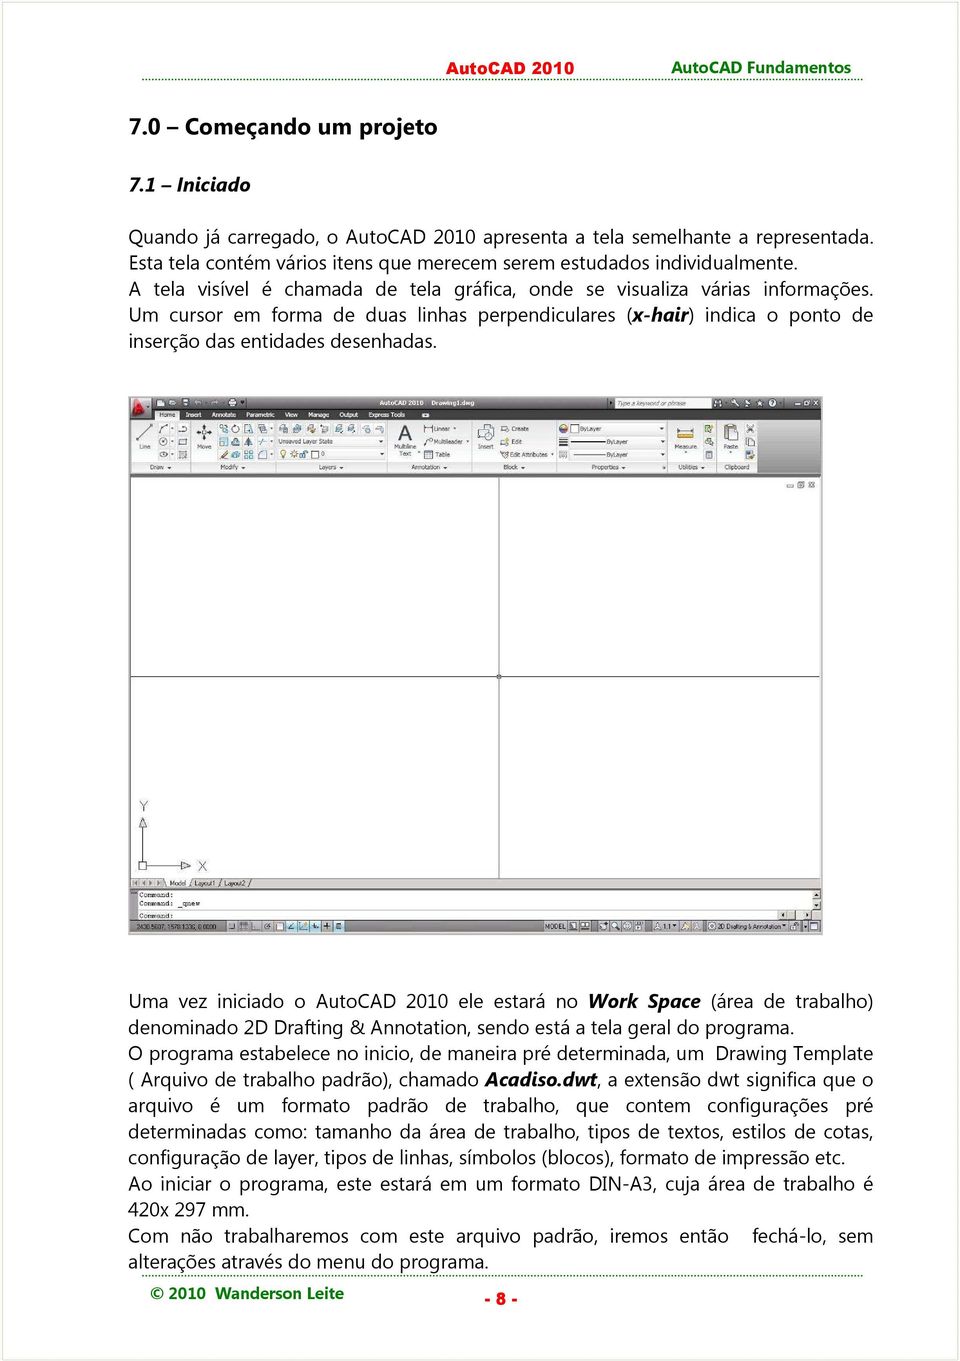 Uma vez iniciado o AutoCAD 2010 ele estará no Work Space (área de trabalho) denominado 2D Drafting & Annotation, sendo está a tela geral do programa.